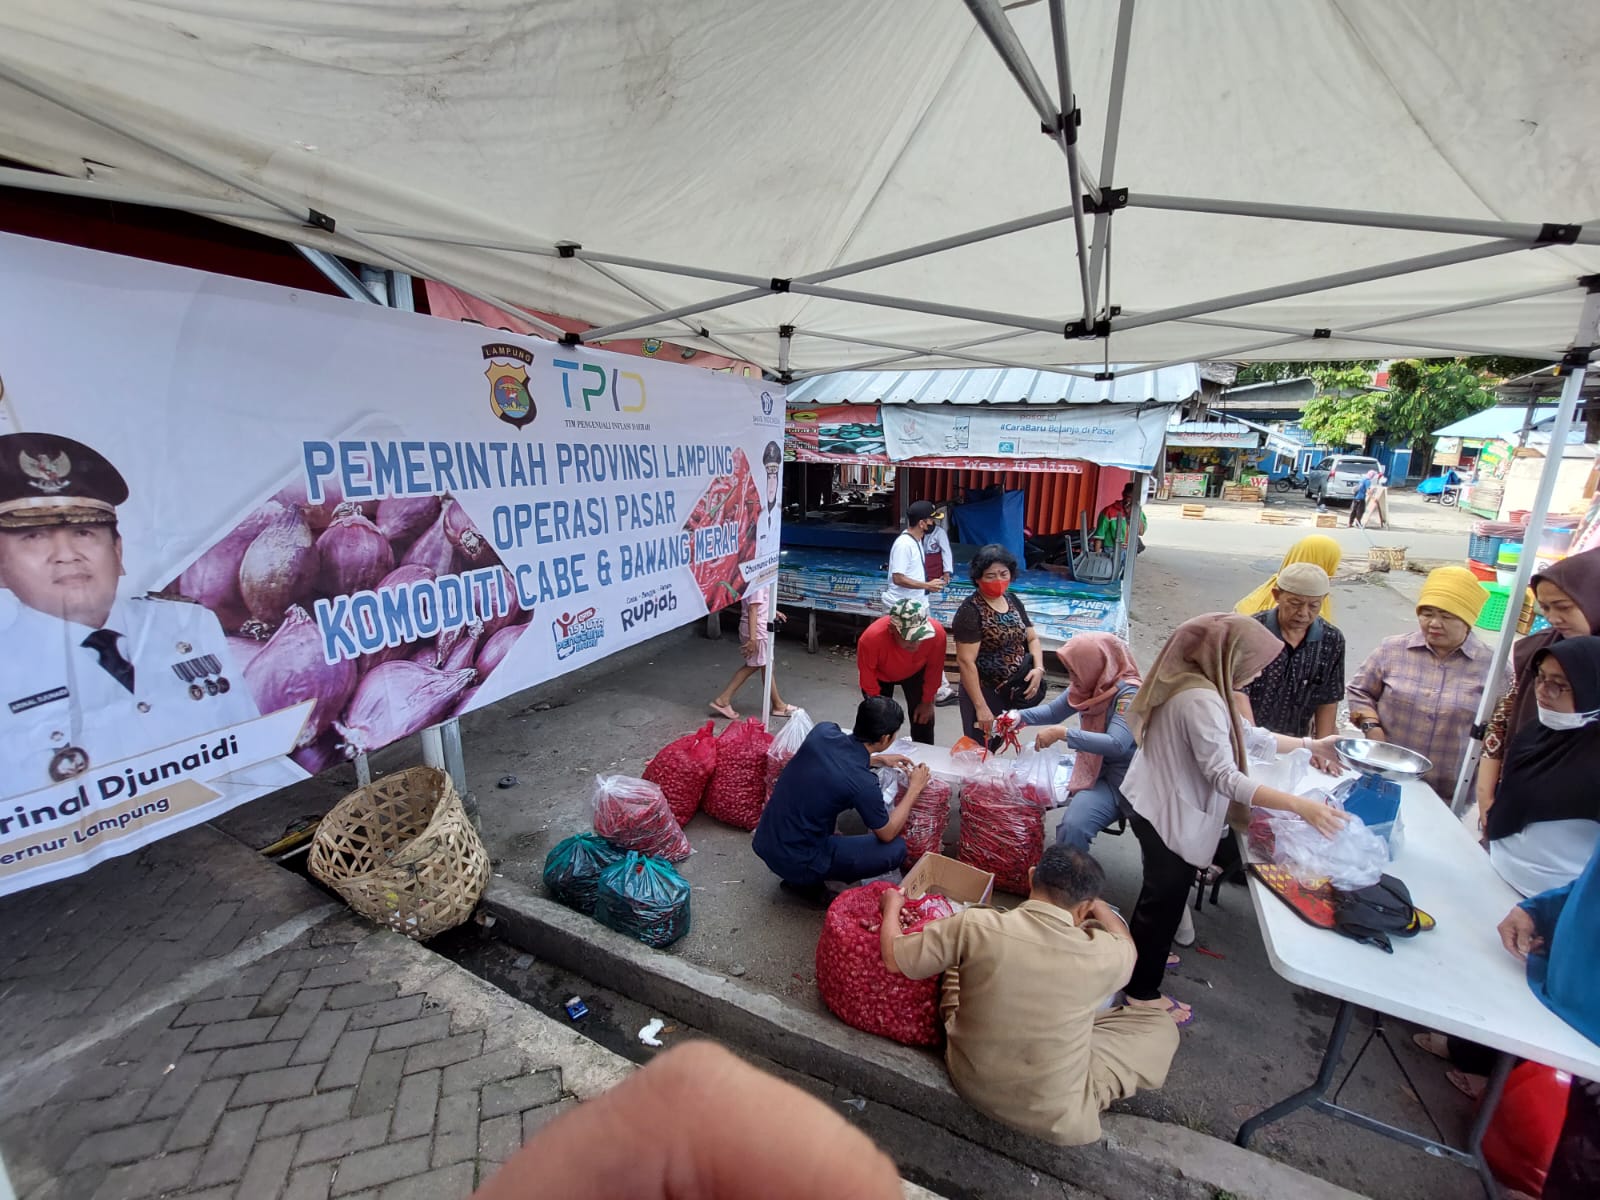 TPID Provinsi Lampung Gelar Operasi Pasar Cabai Merah dan Bawang Merah